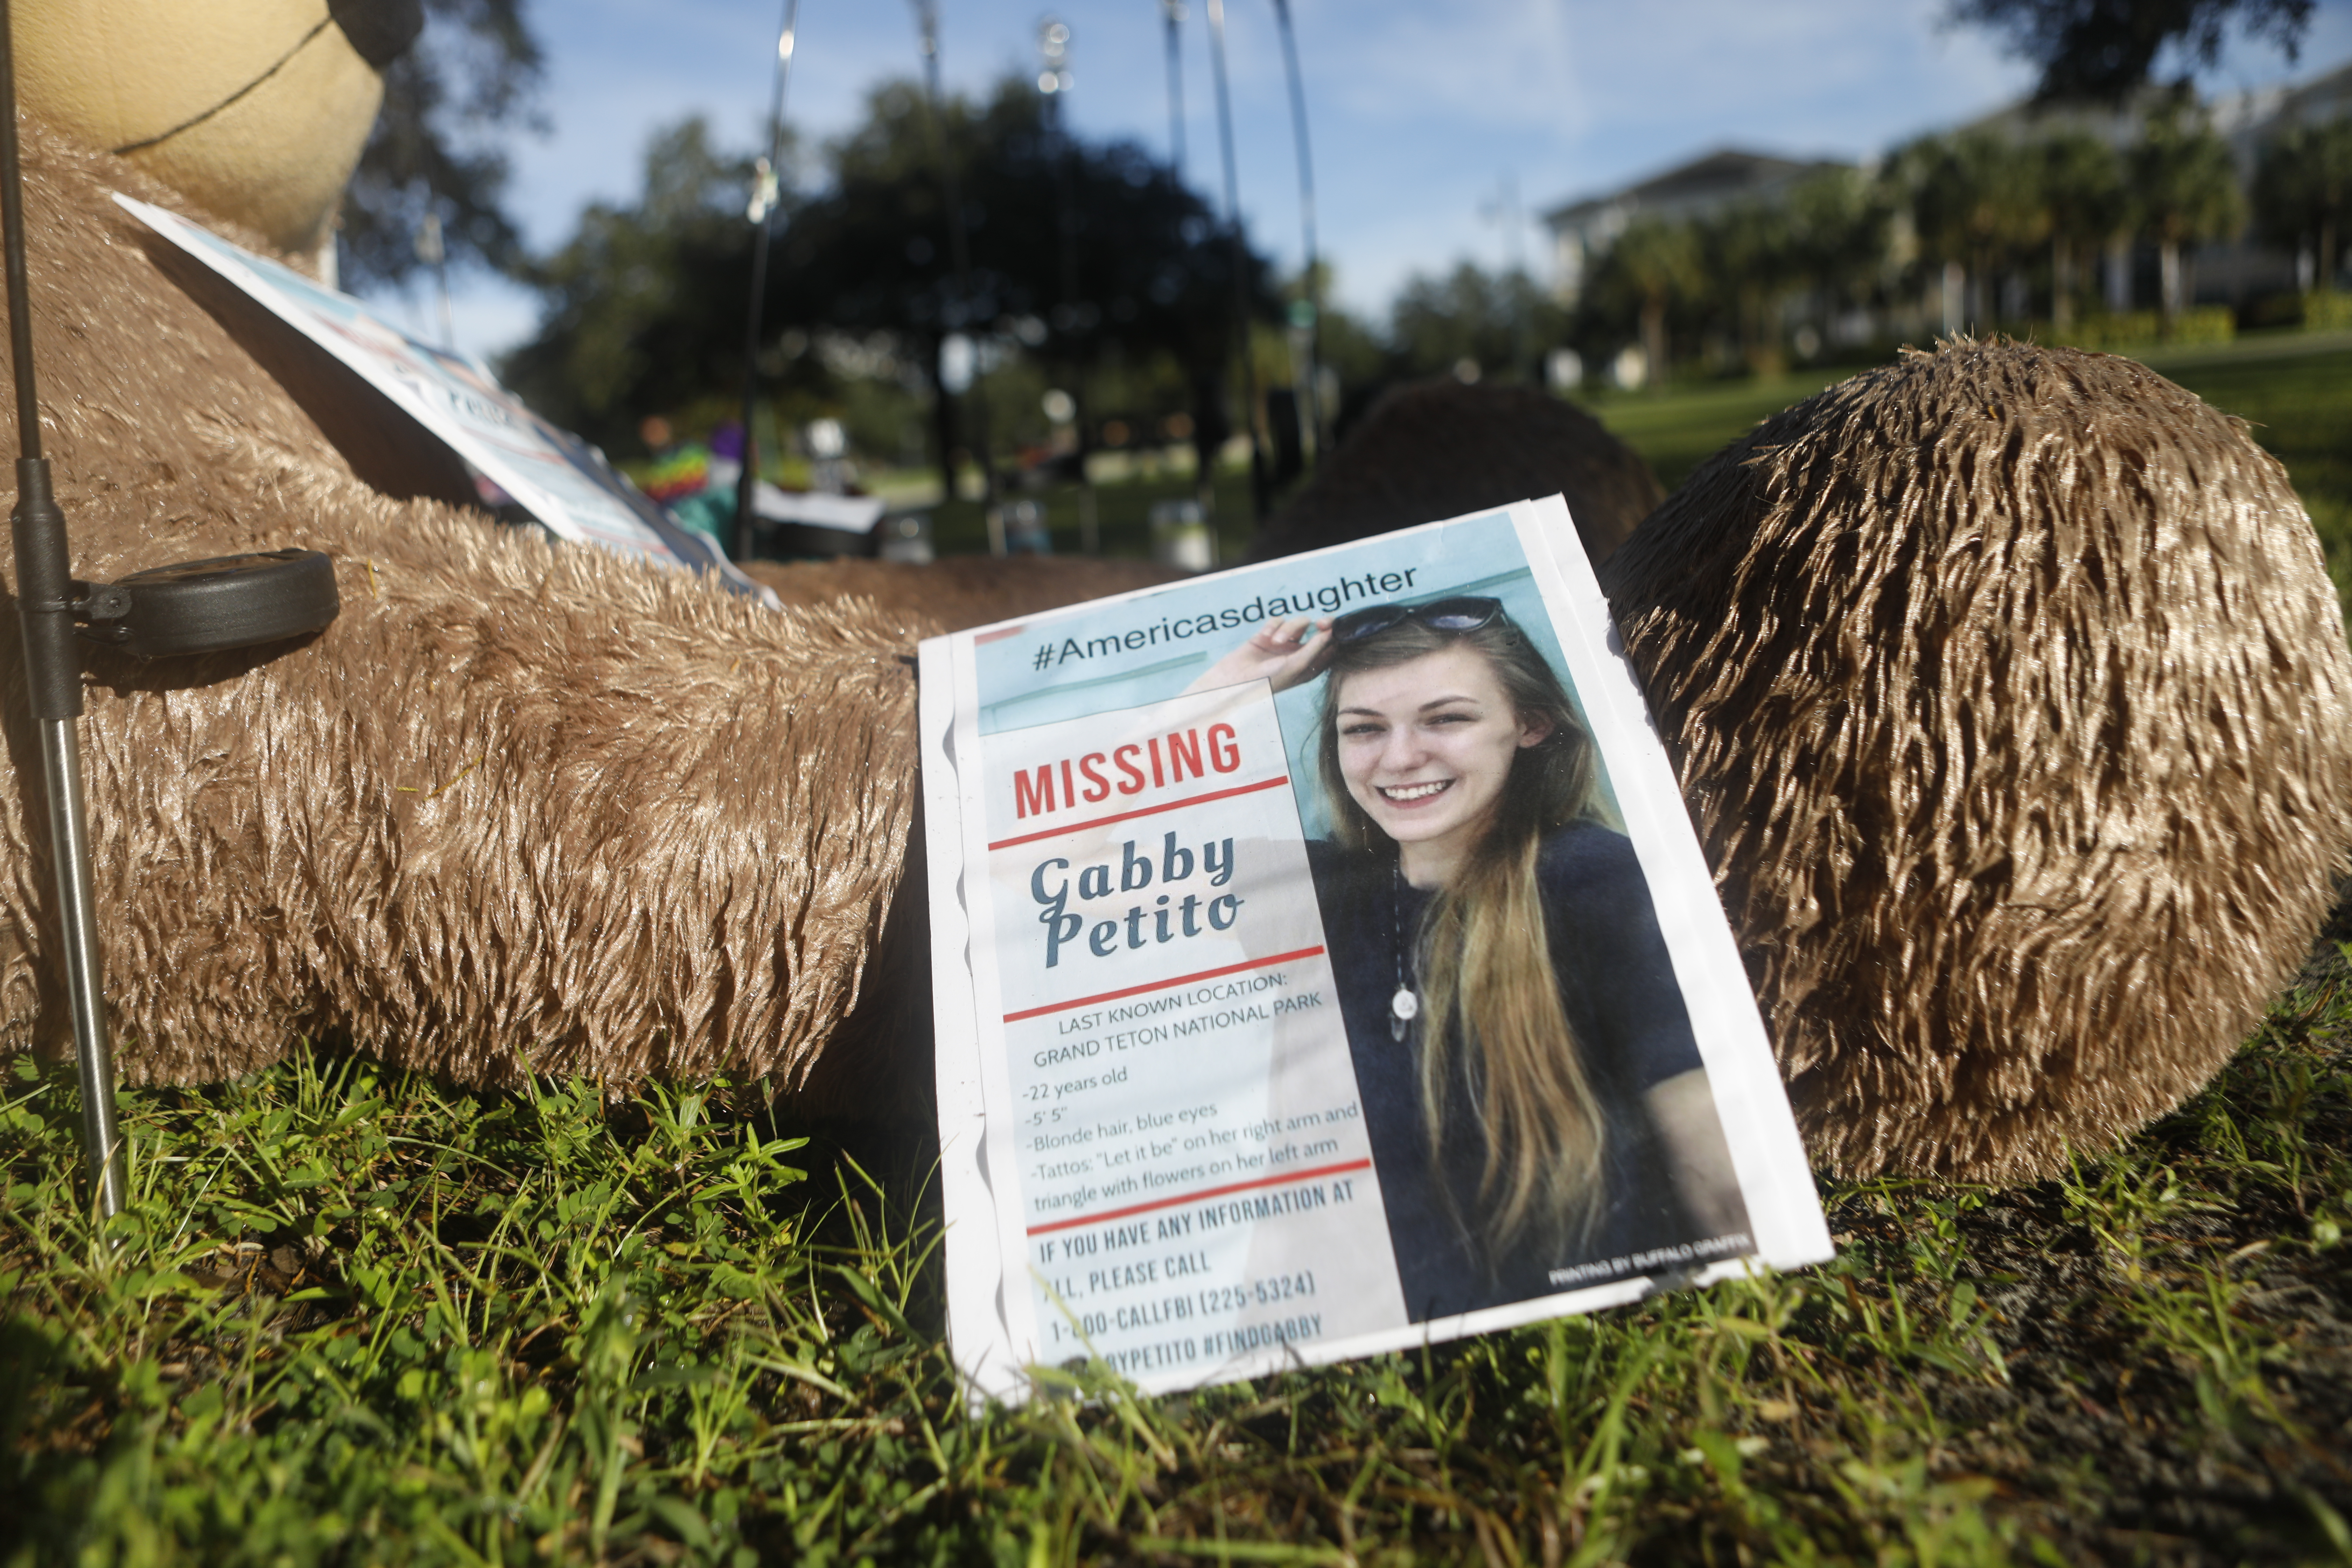 Un memorial improvisado dedicado a la mujer desaparecida Gabby Petito se encuentra cerca del Ayuntamiento el 20 de septiembre de 2021 en North Port, Florida.